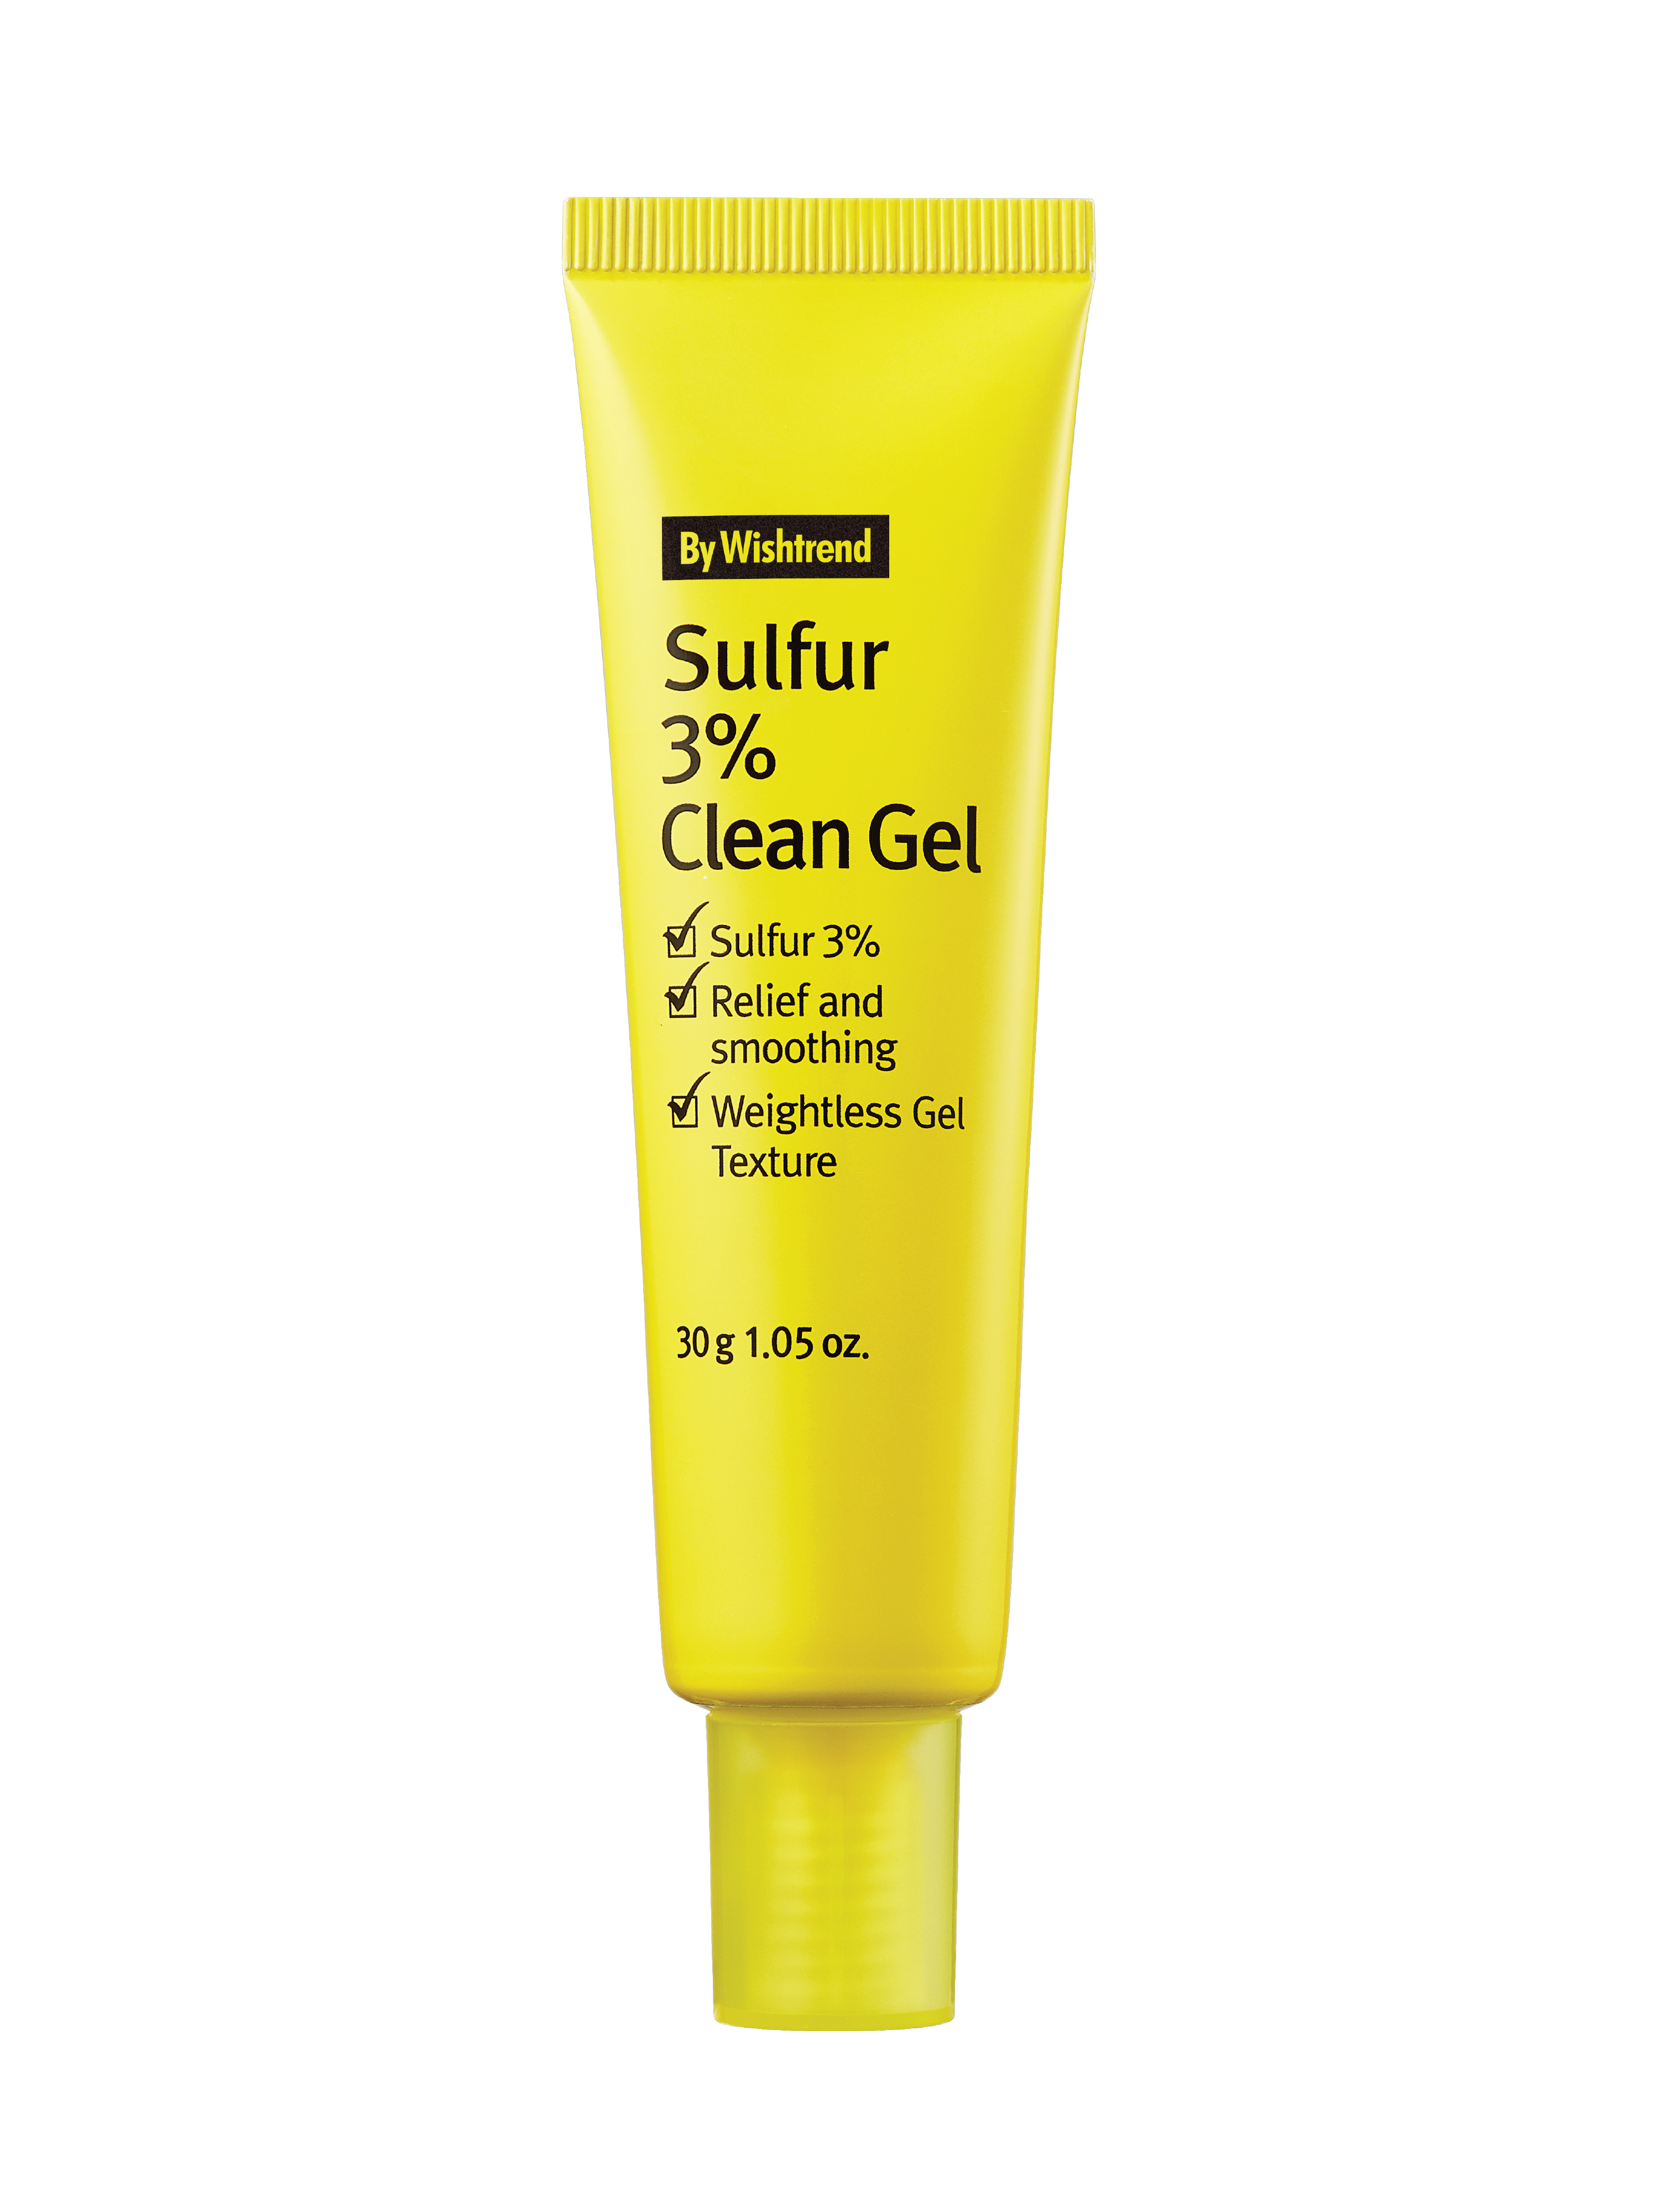 By Wishtrend Sulfur 3% Clean Gel, 30 g